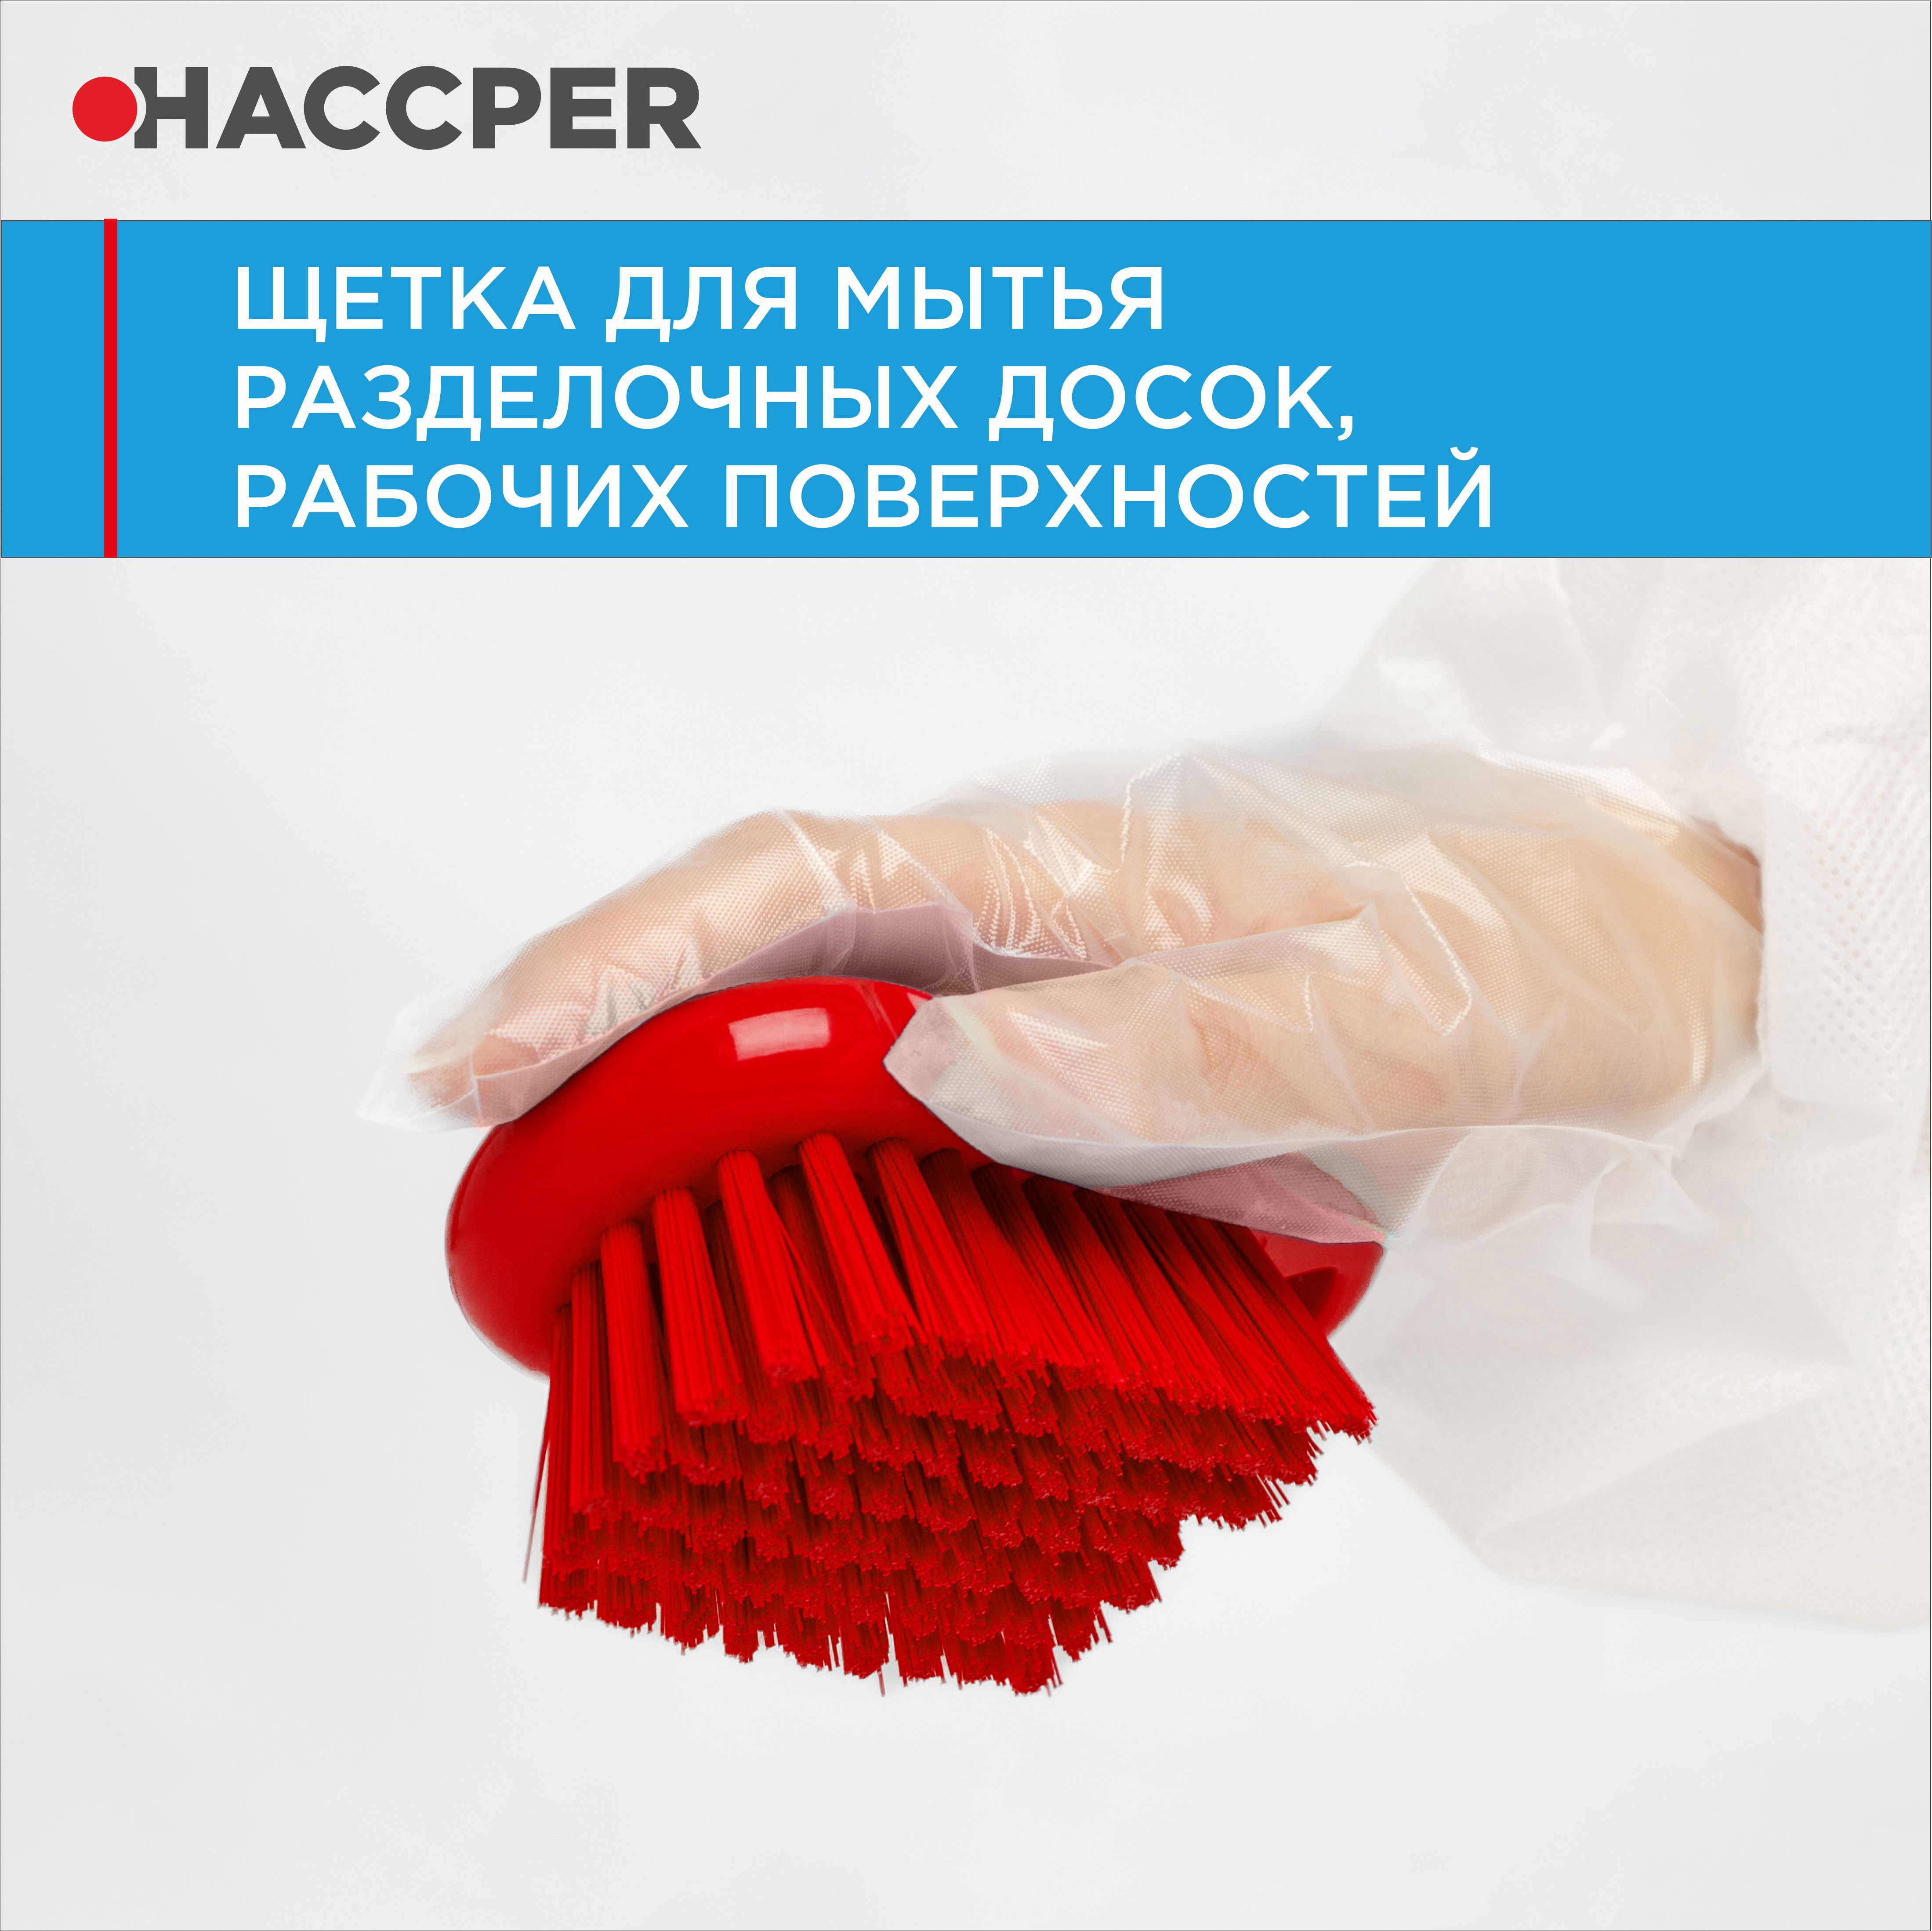 Щетка HACCPER для мытья разделочных досок, рабочих поверхностей, красная